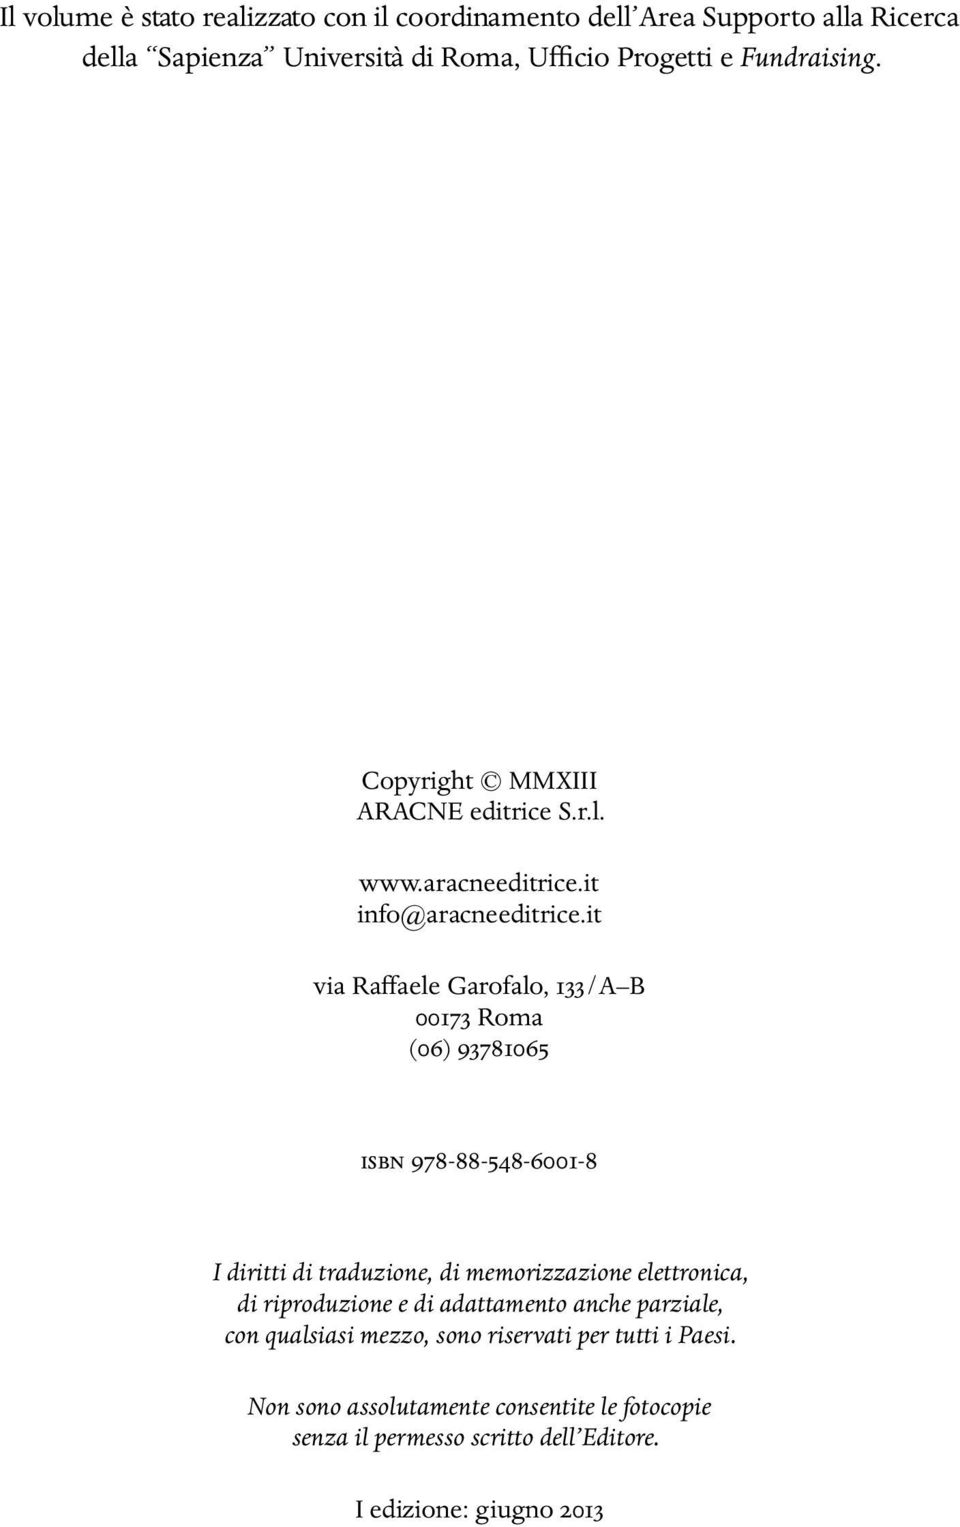 it via Raffaele Garofalo, 133/A B 00173 Roma (06) 93781065 ISBN 978-88-548-6001-8 I diritti di traduzione, di memorizzazione elettronica, di